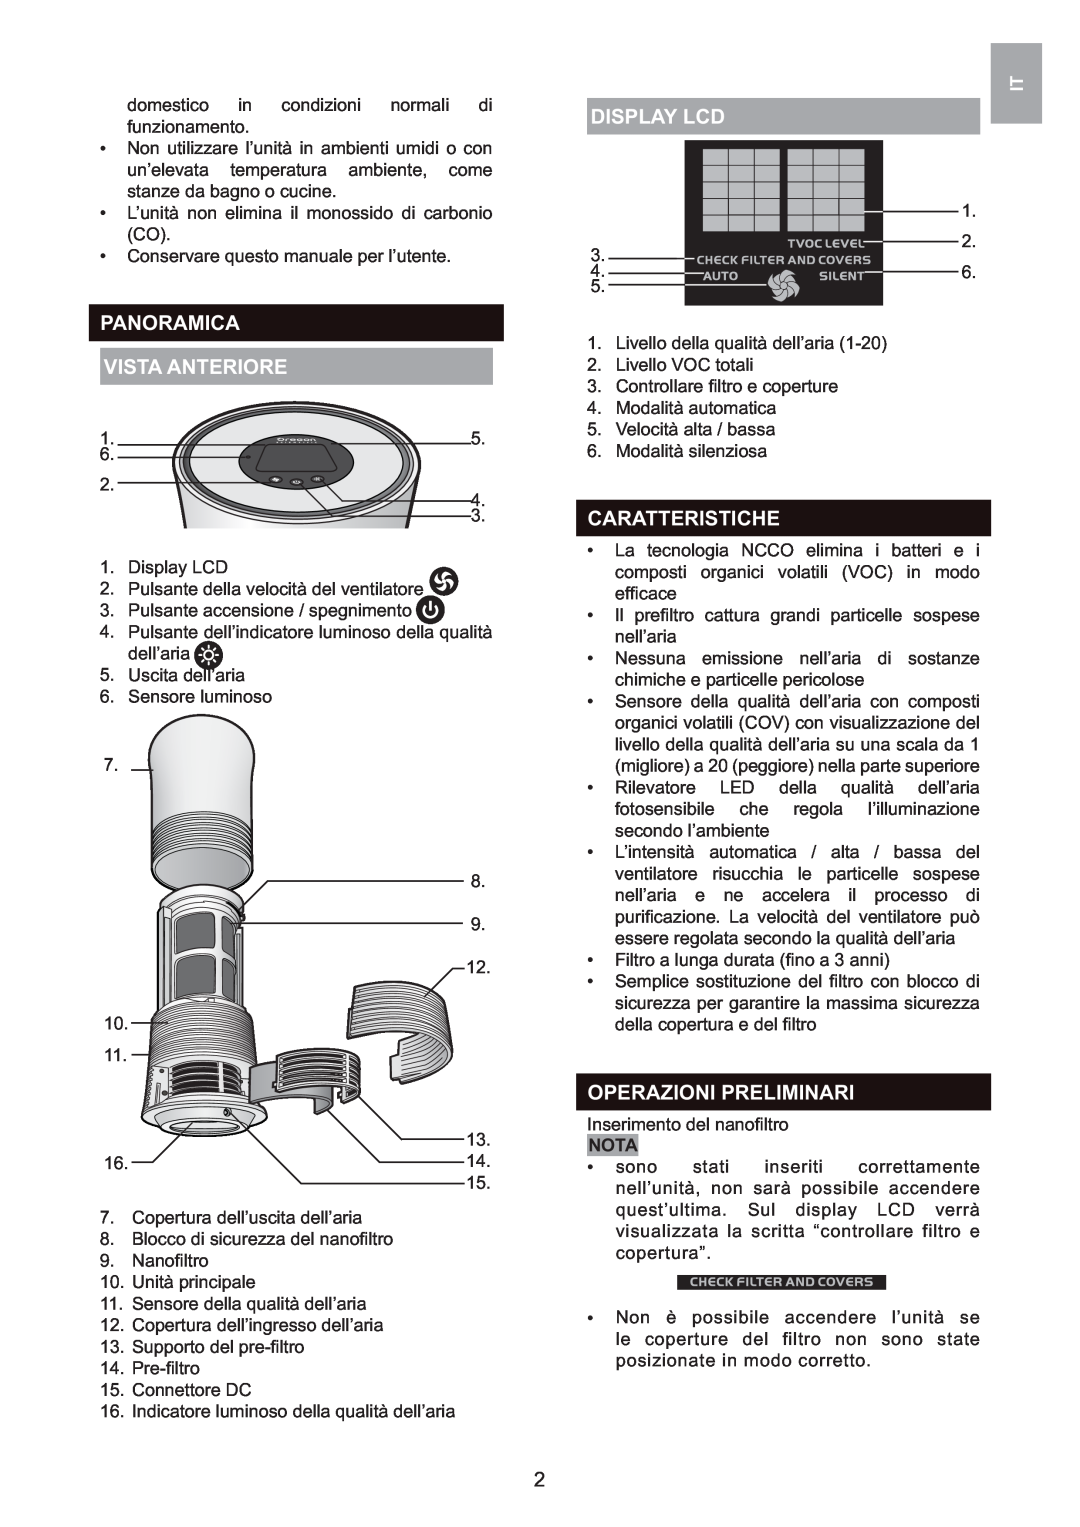 Oregon Scientific WS907 user manual Panoramica Vista Anteriore, Display Lcd, Caratteristiche, Operazioni Preliminari, Nota 